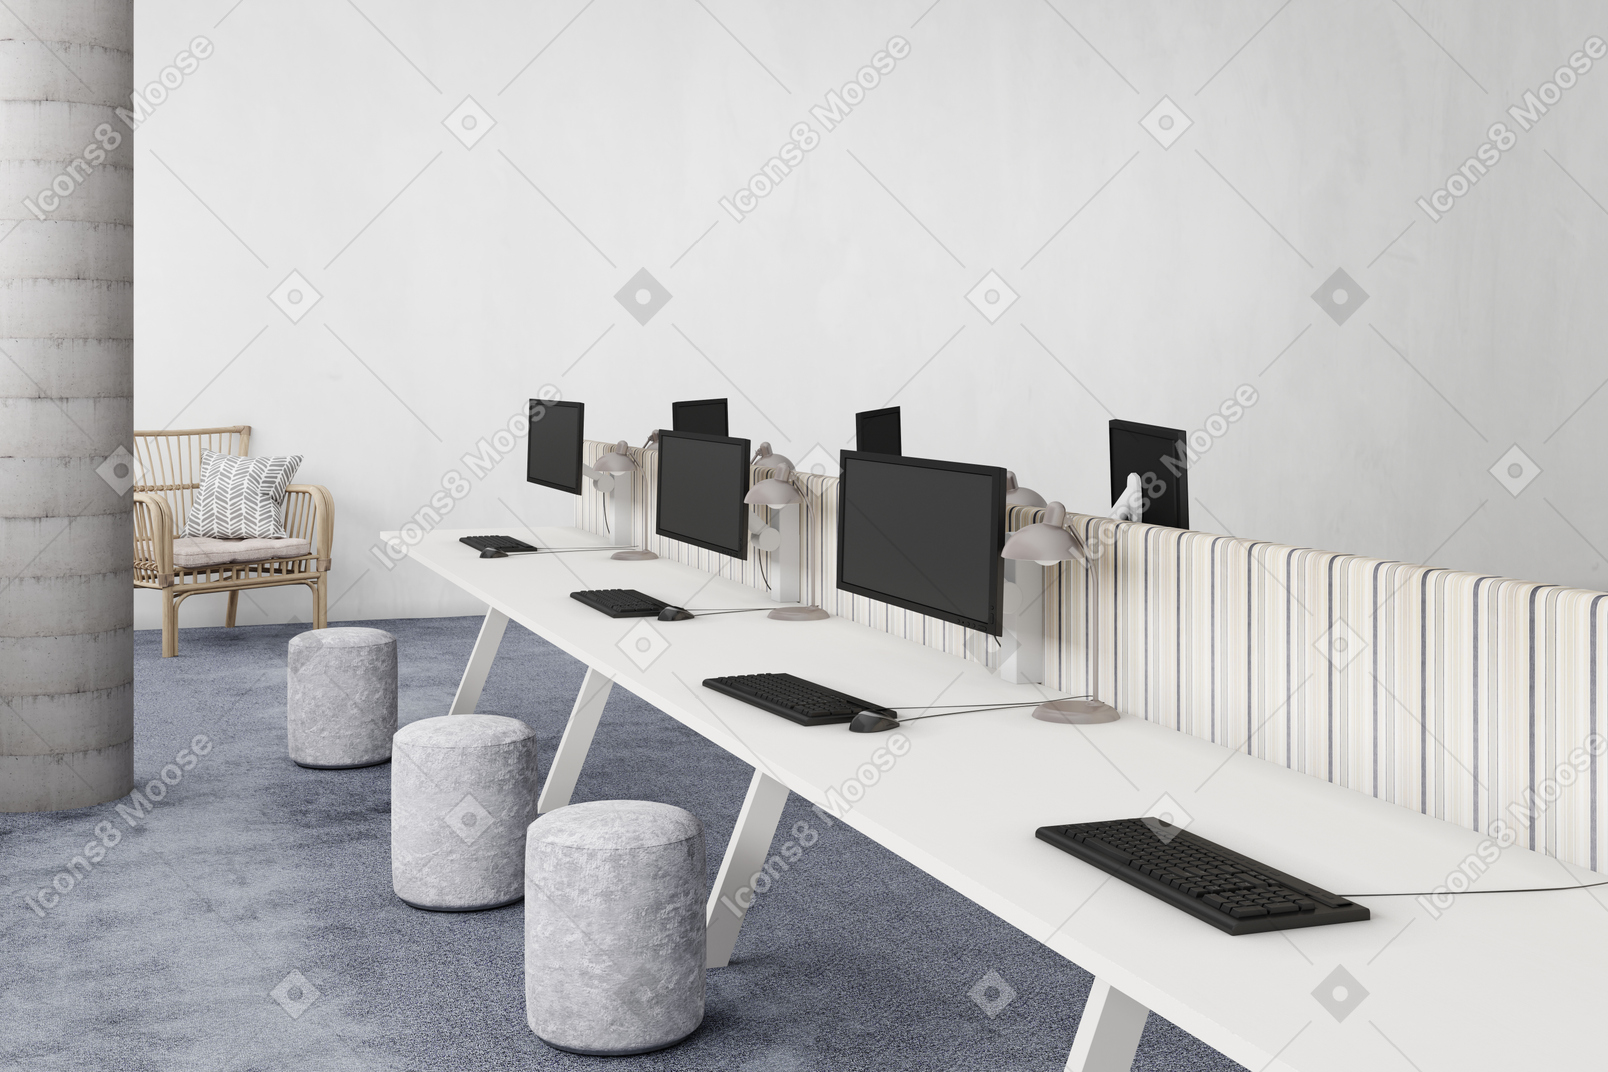 Coworking space mit computern und hockern